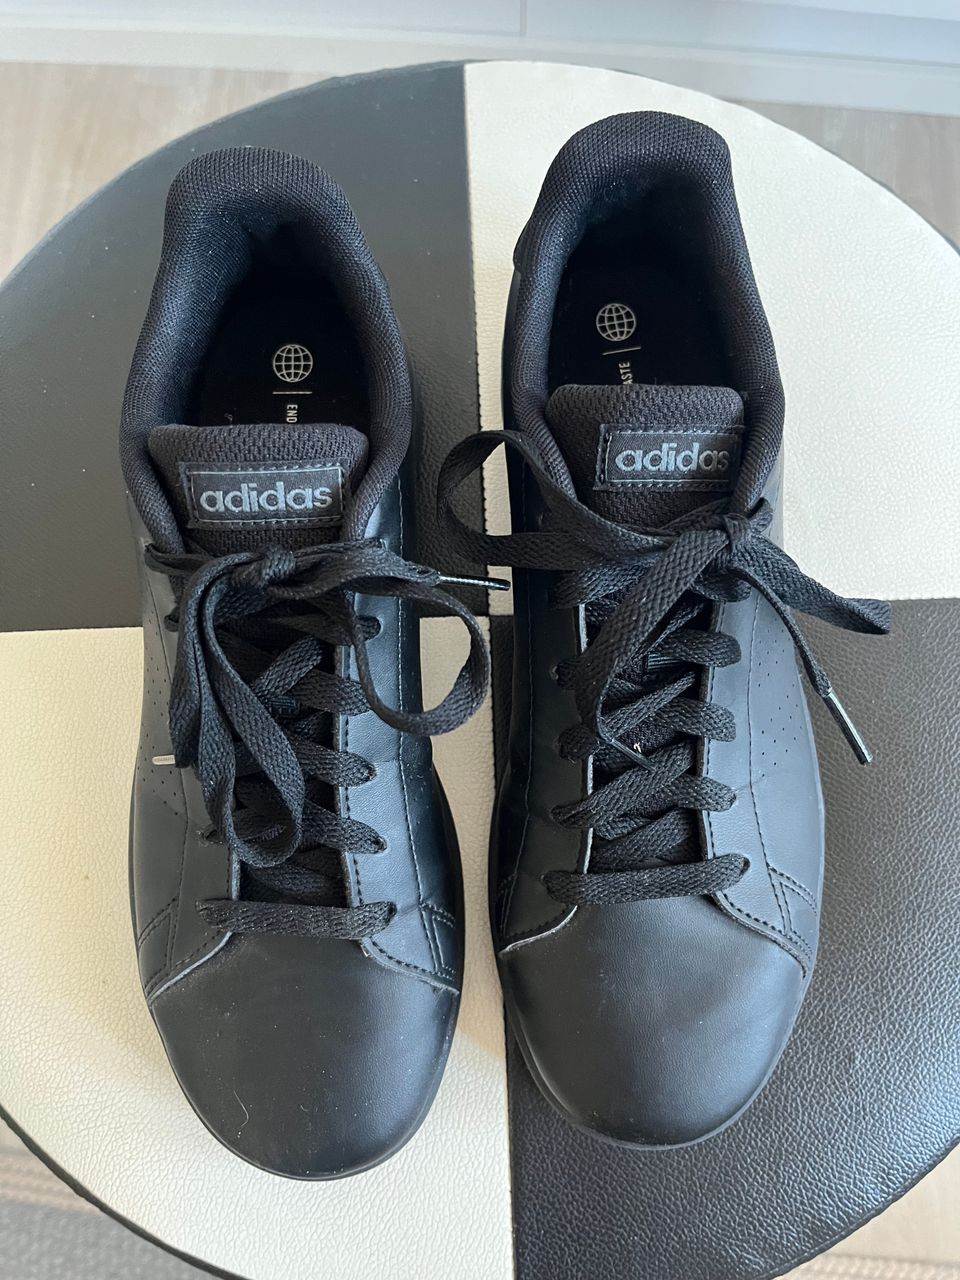 Adidas mustat kengät